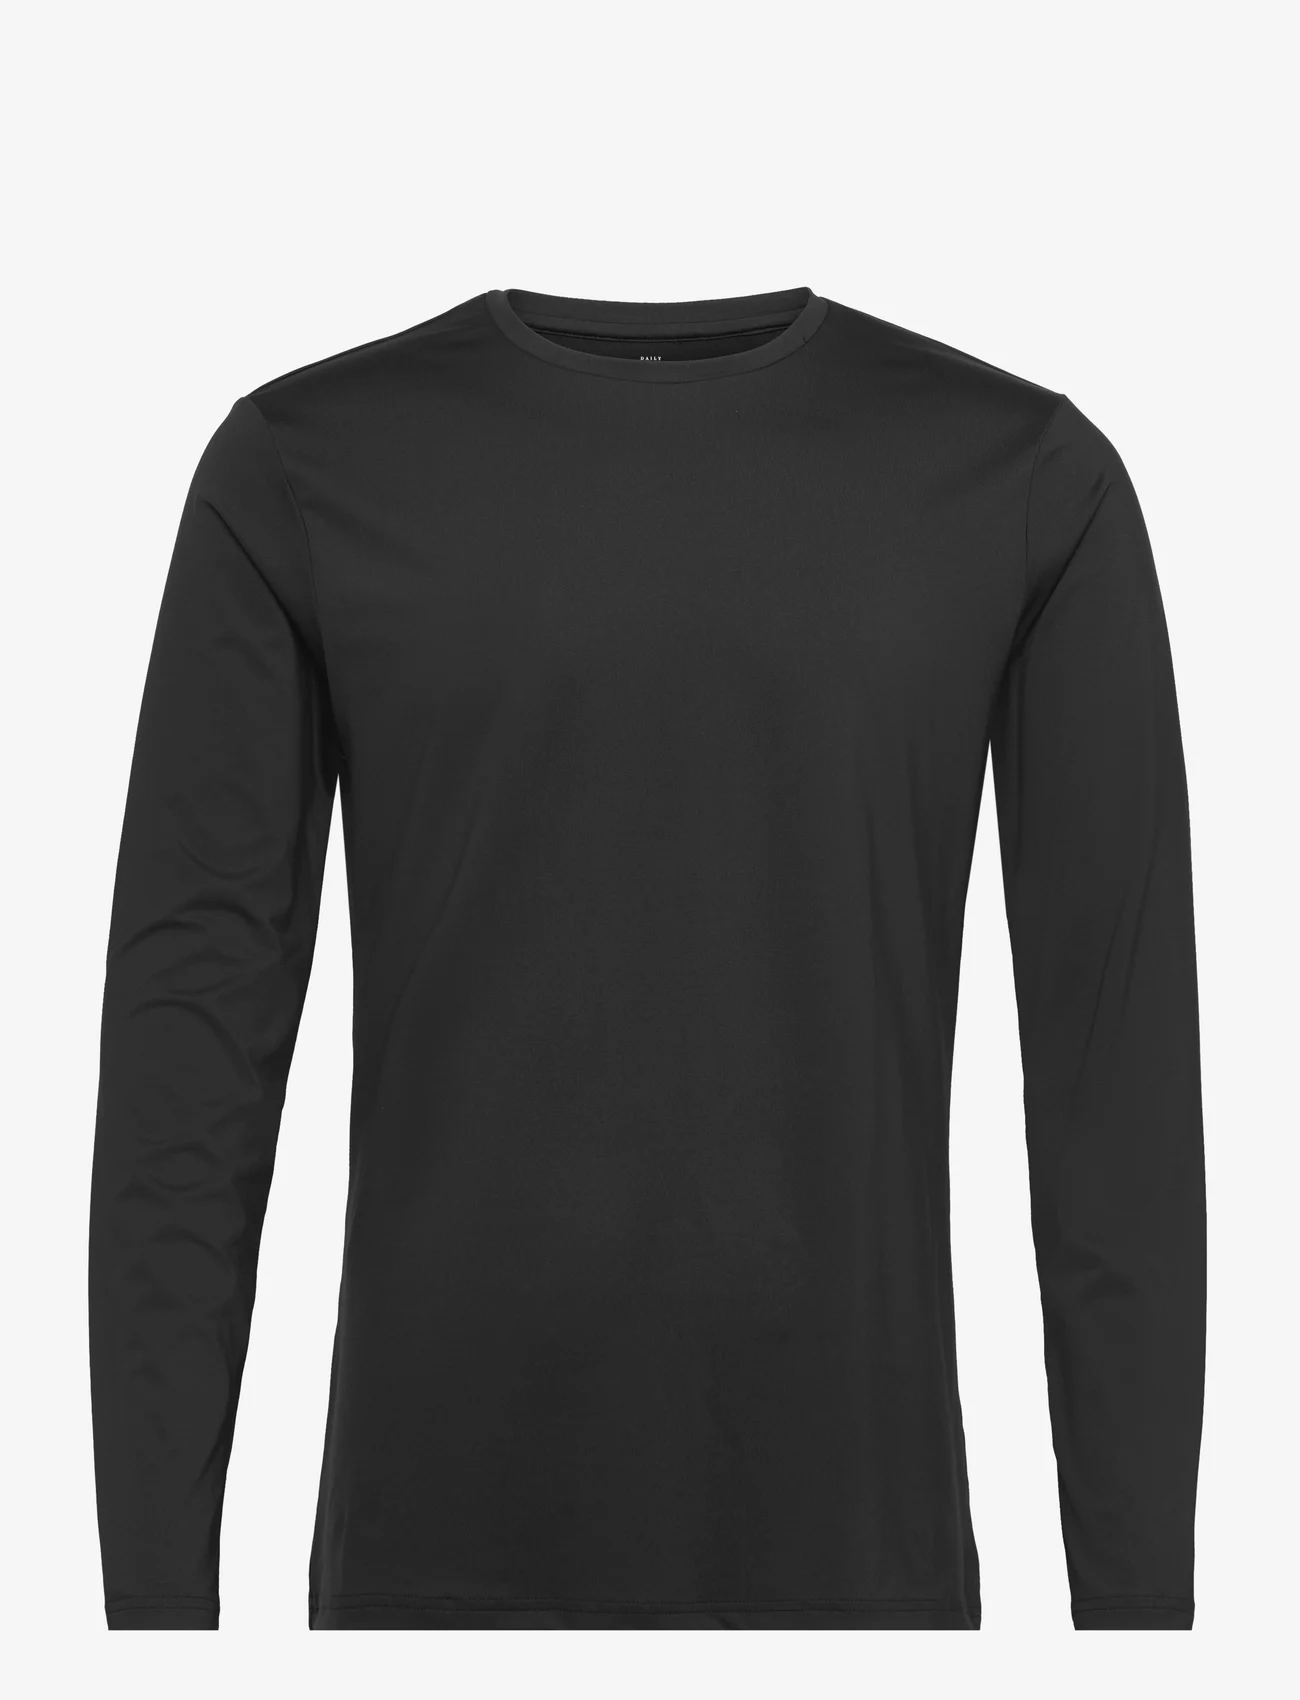 Bread & Boxers - Long Sleeve Active - laisvalaikio marškinėliai - black - 0